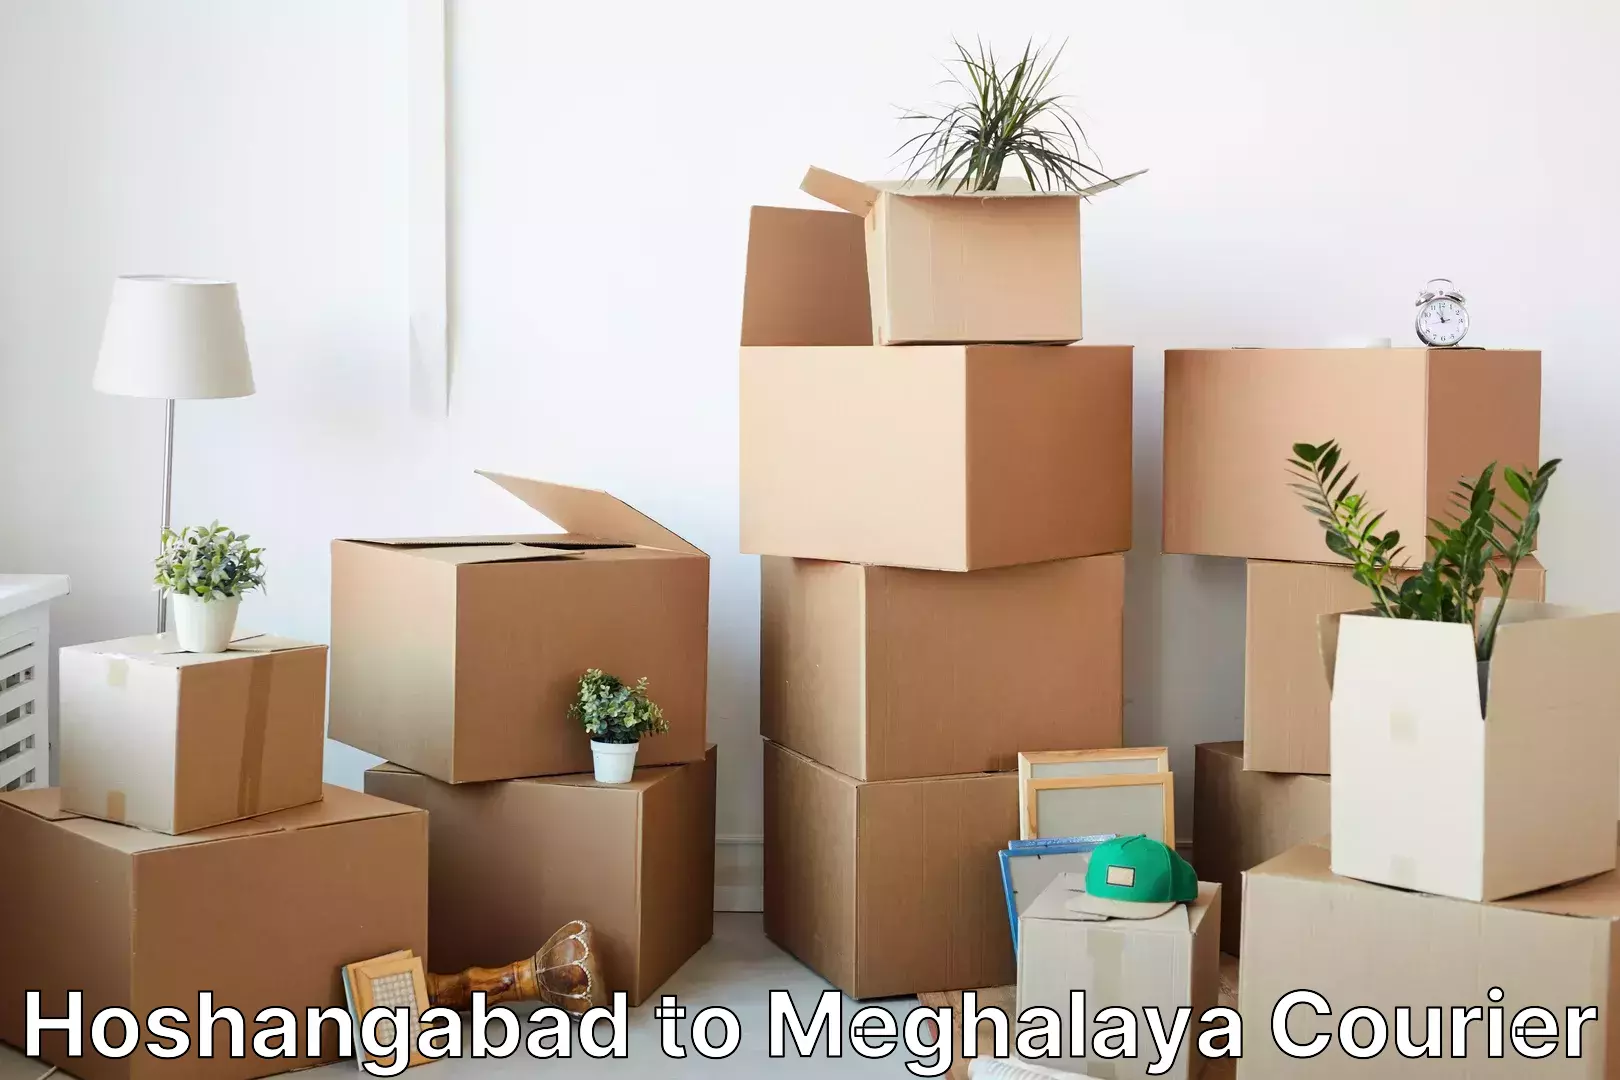 Urgent courier needs Hoshangabad to Meghalaya